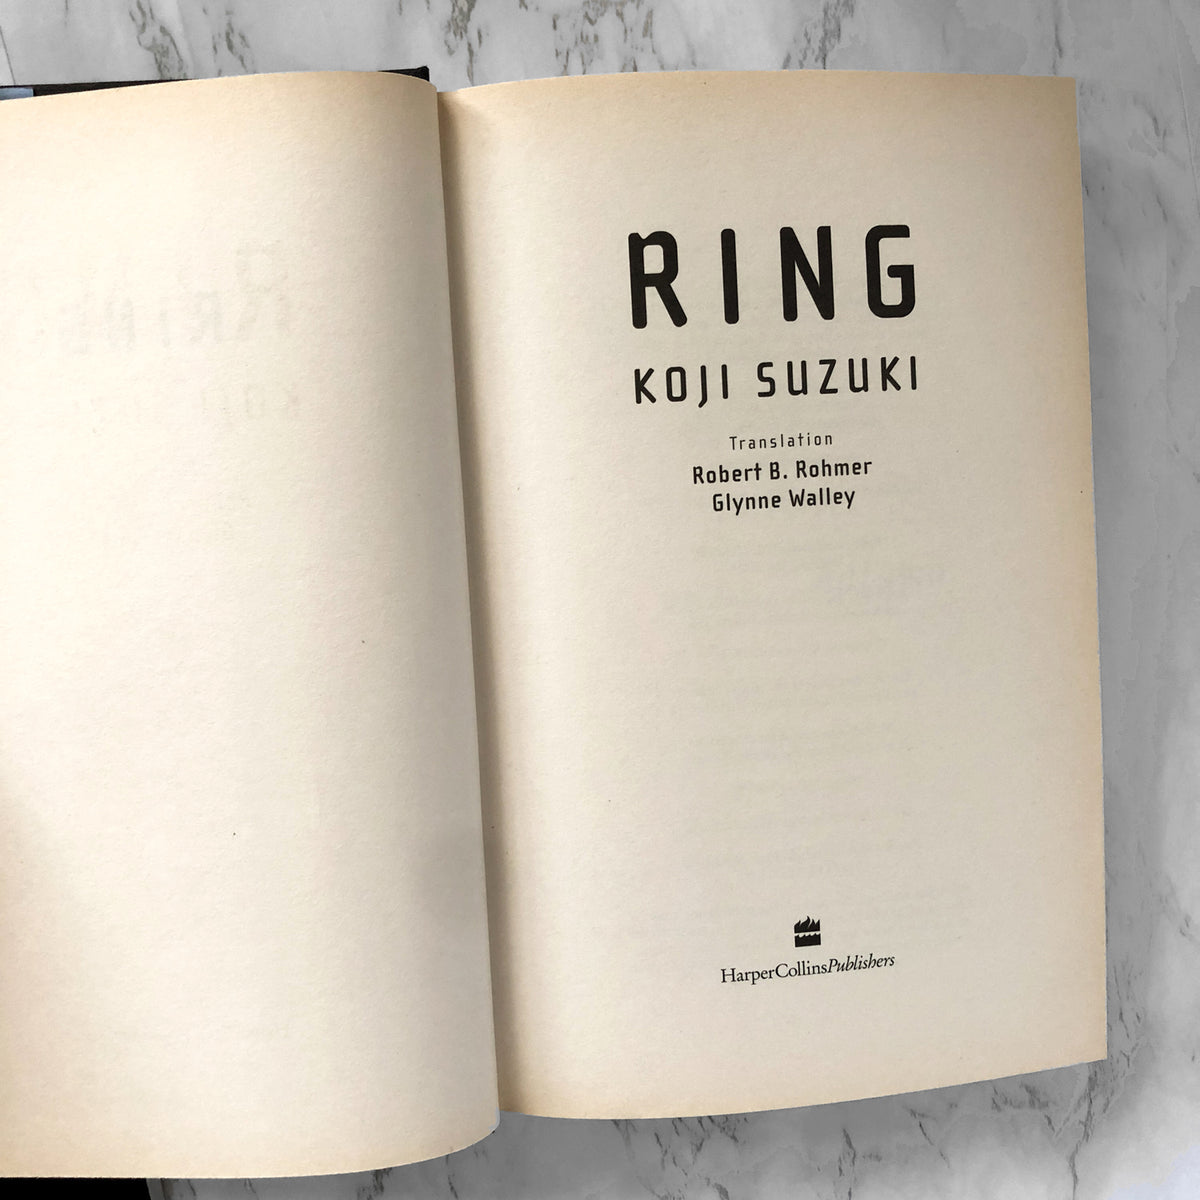 Ring by Koji Suzuki [UK FIRST EDITION]